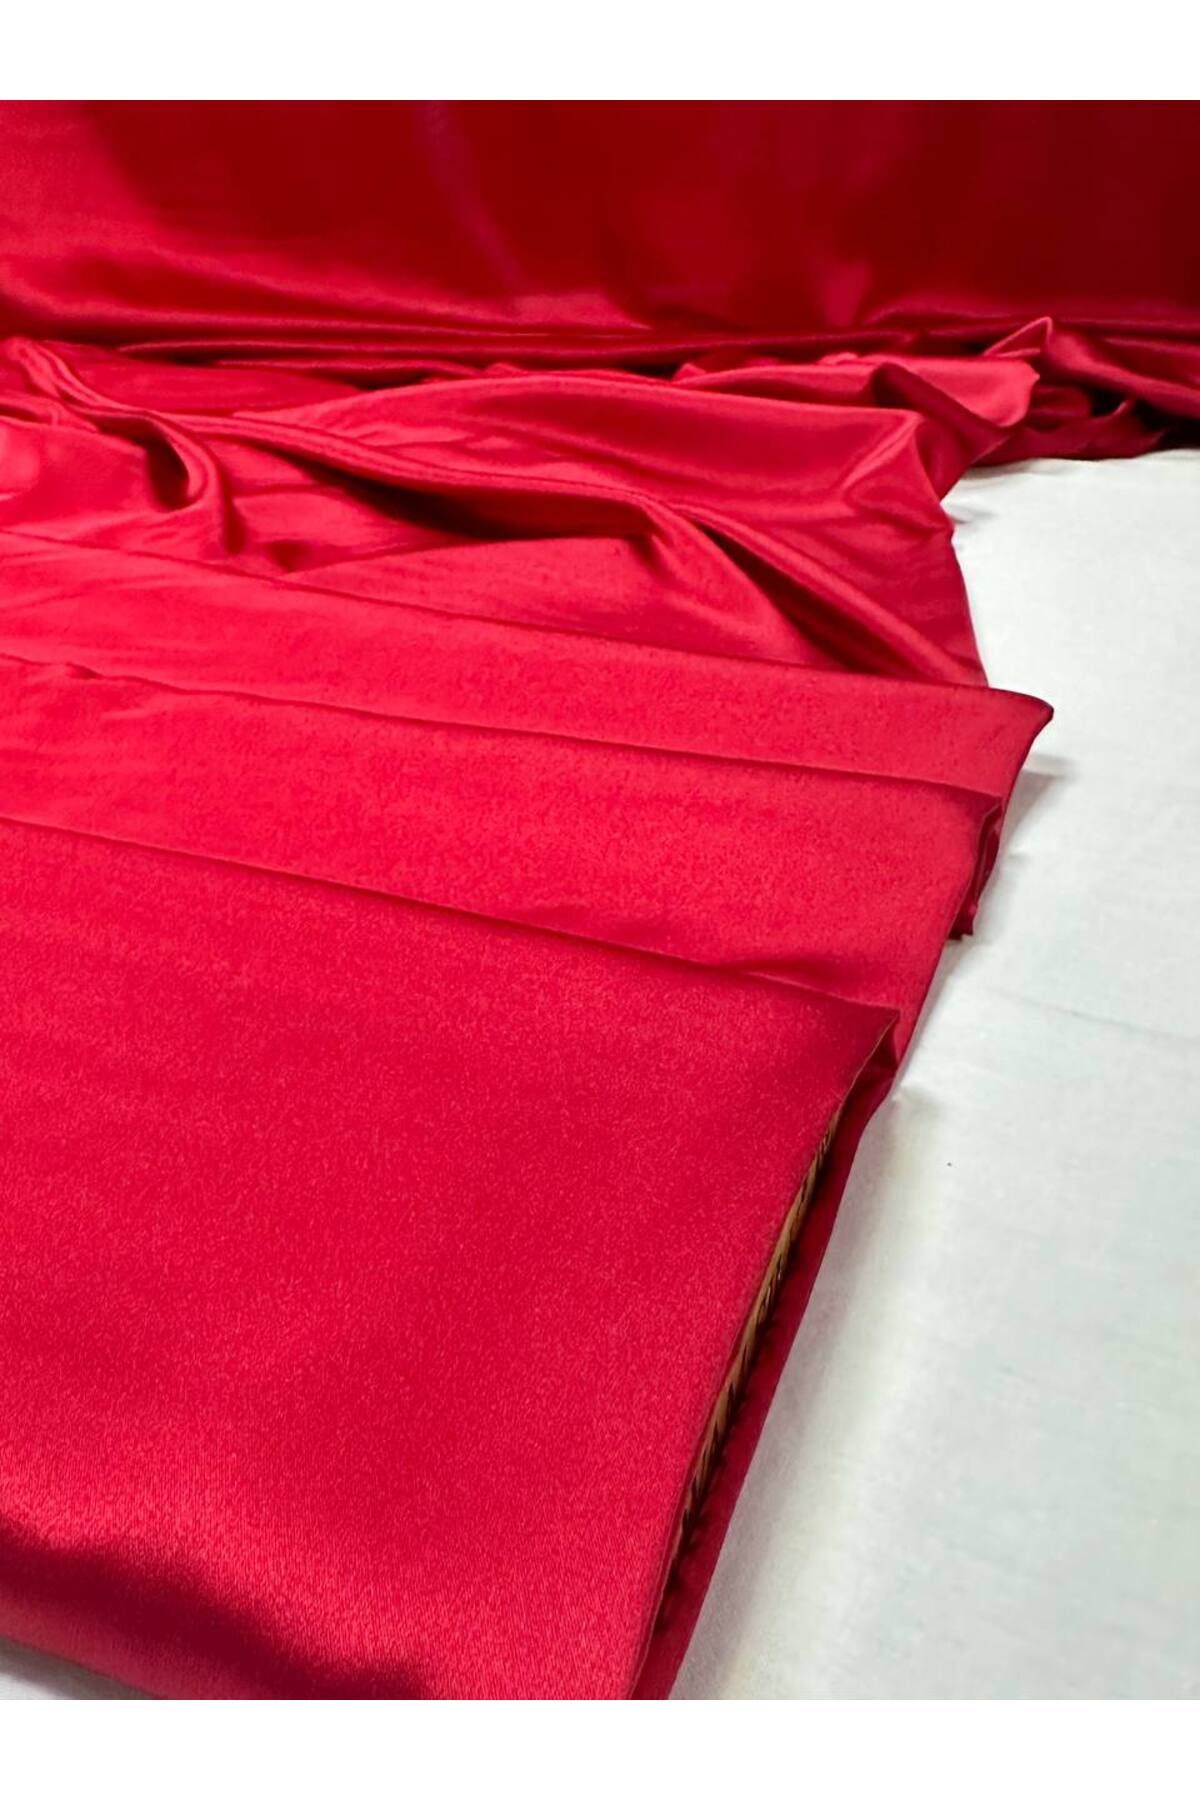 Red Silk Satin - 140cm wide